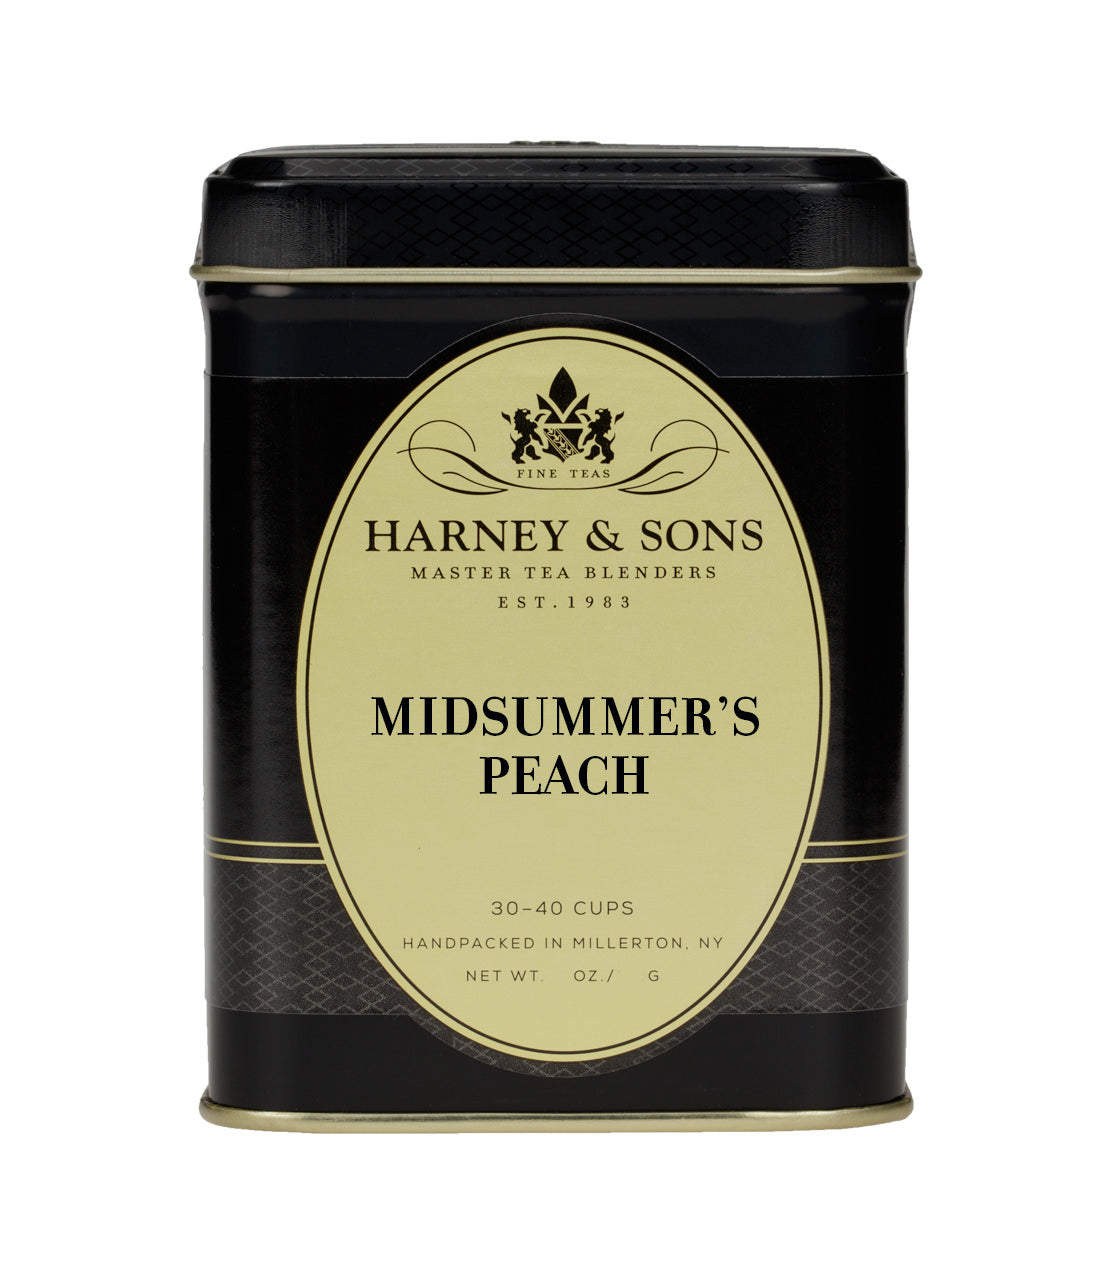 Midsummer's Peach (Decaf) - Loose 4 oz. Tin - Harney & Sons Fine Teas